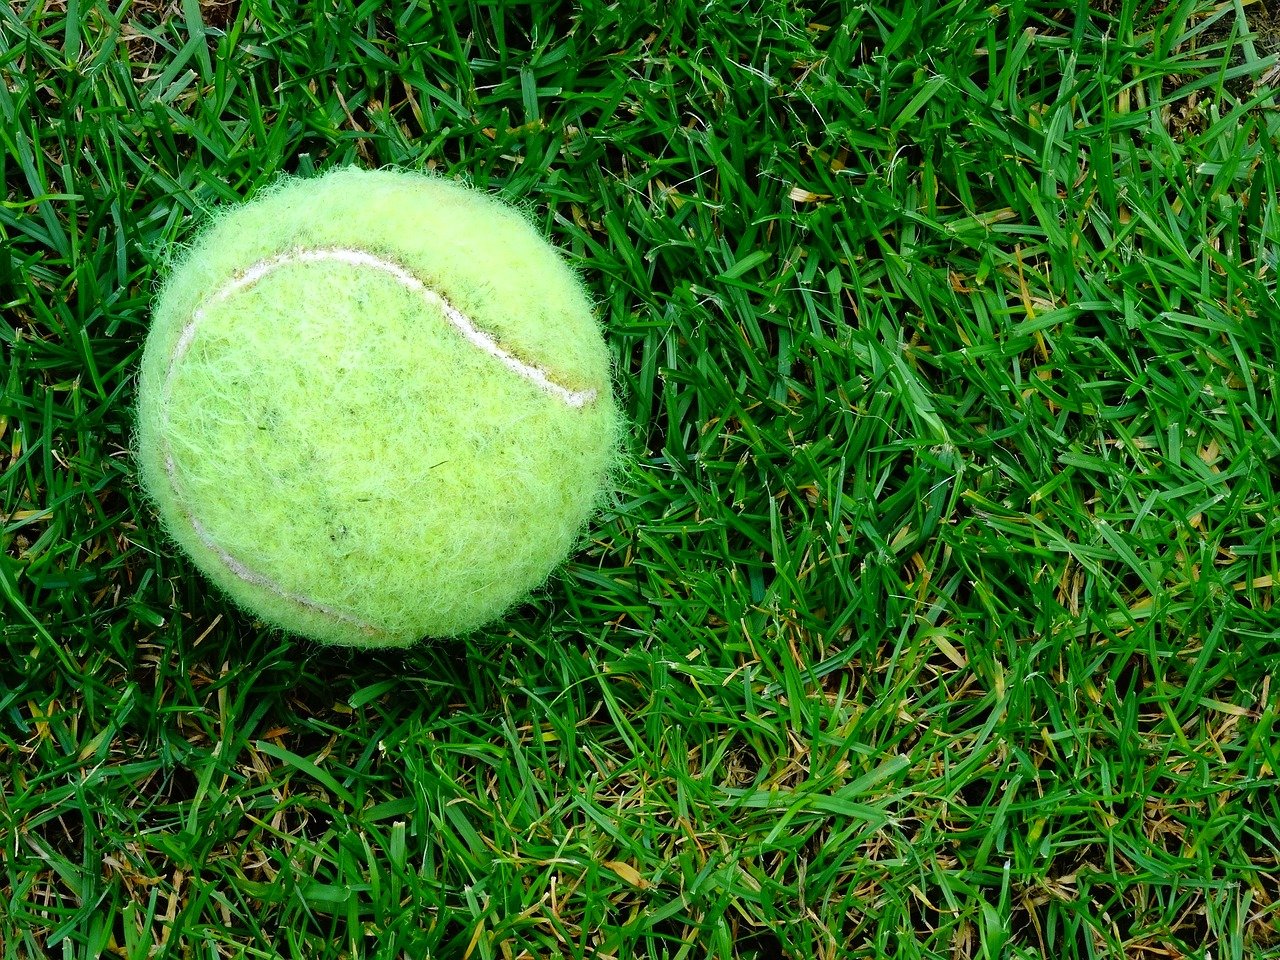 Tennis ball on the grass